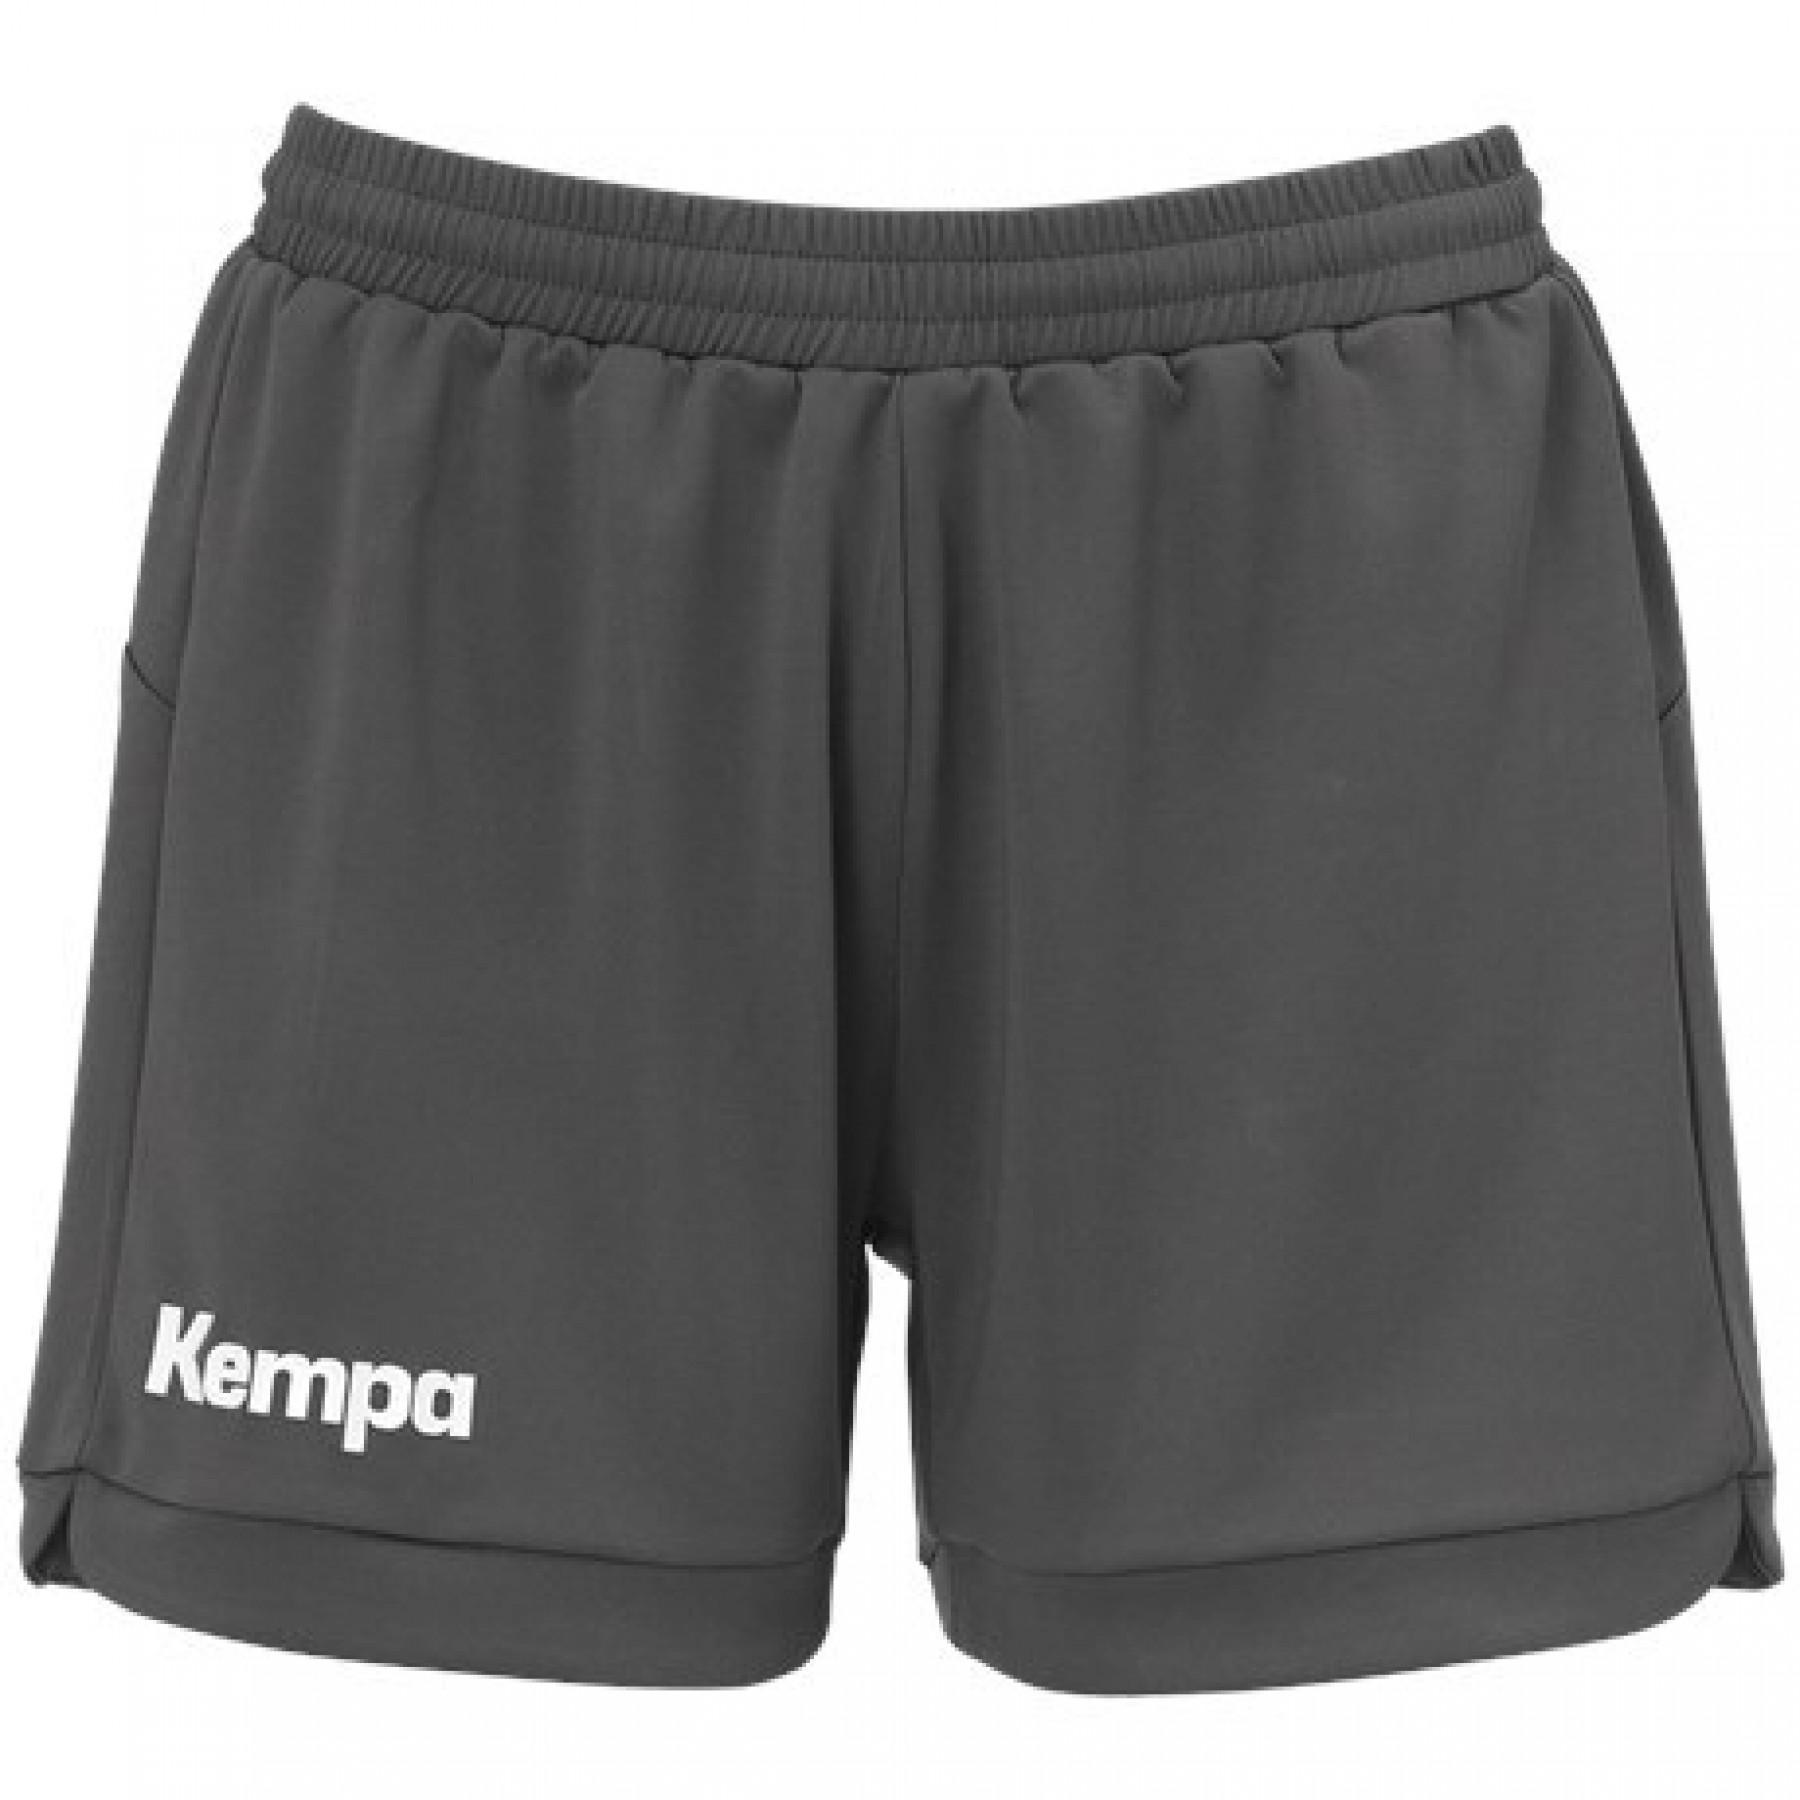 Pantalón corto mujer Kempa Prime